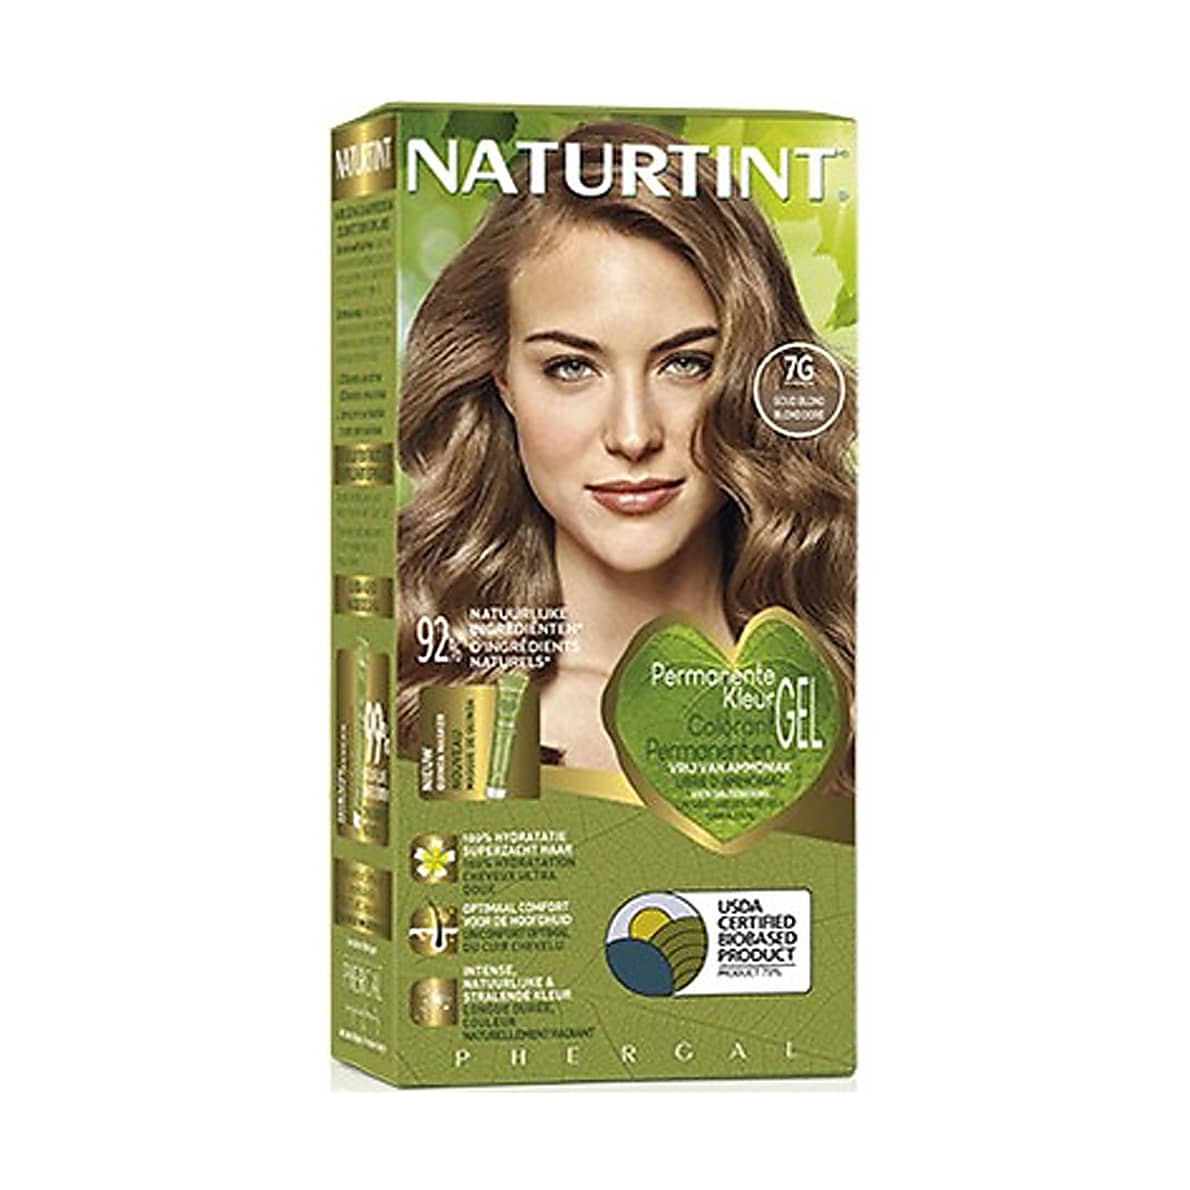 moeilijk Vergelding hangen Naturtint Permanente Haarverf 7G Goud Blond | BigGreenSmile